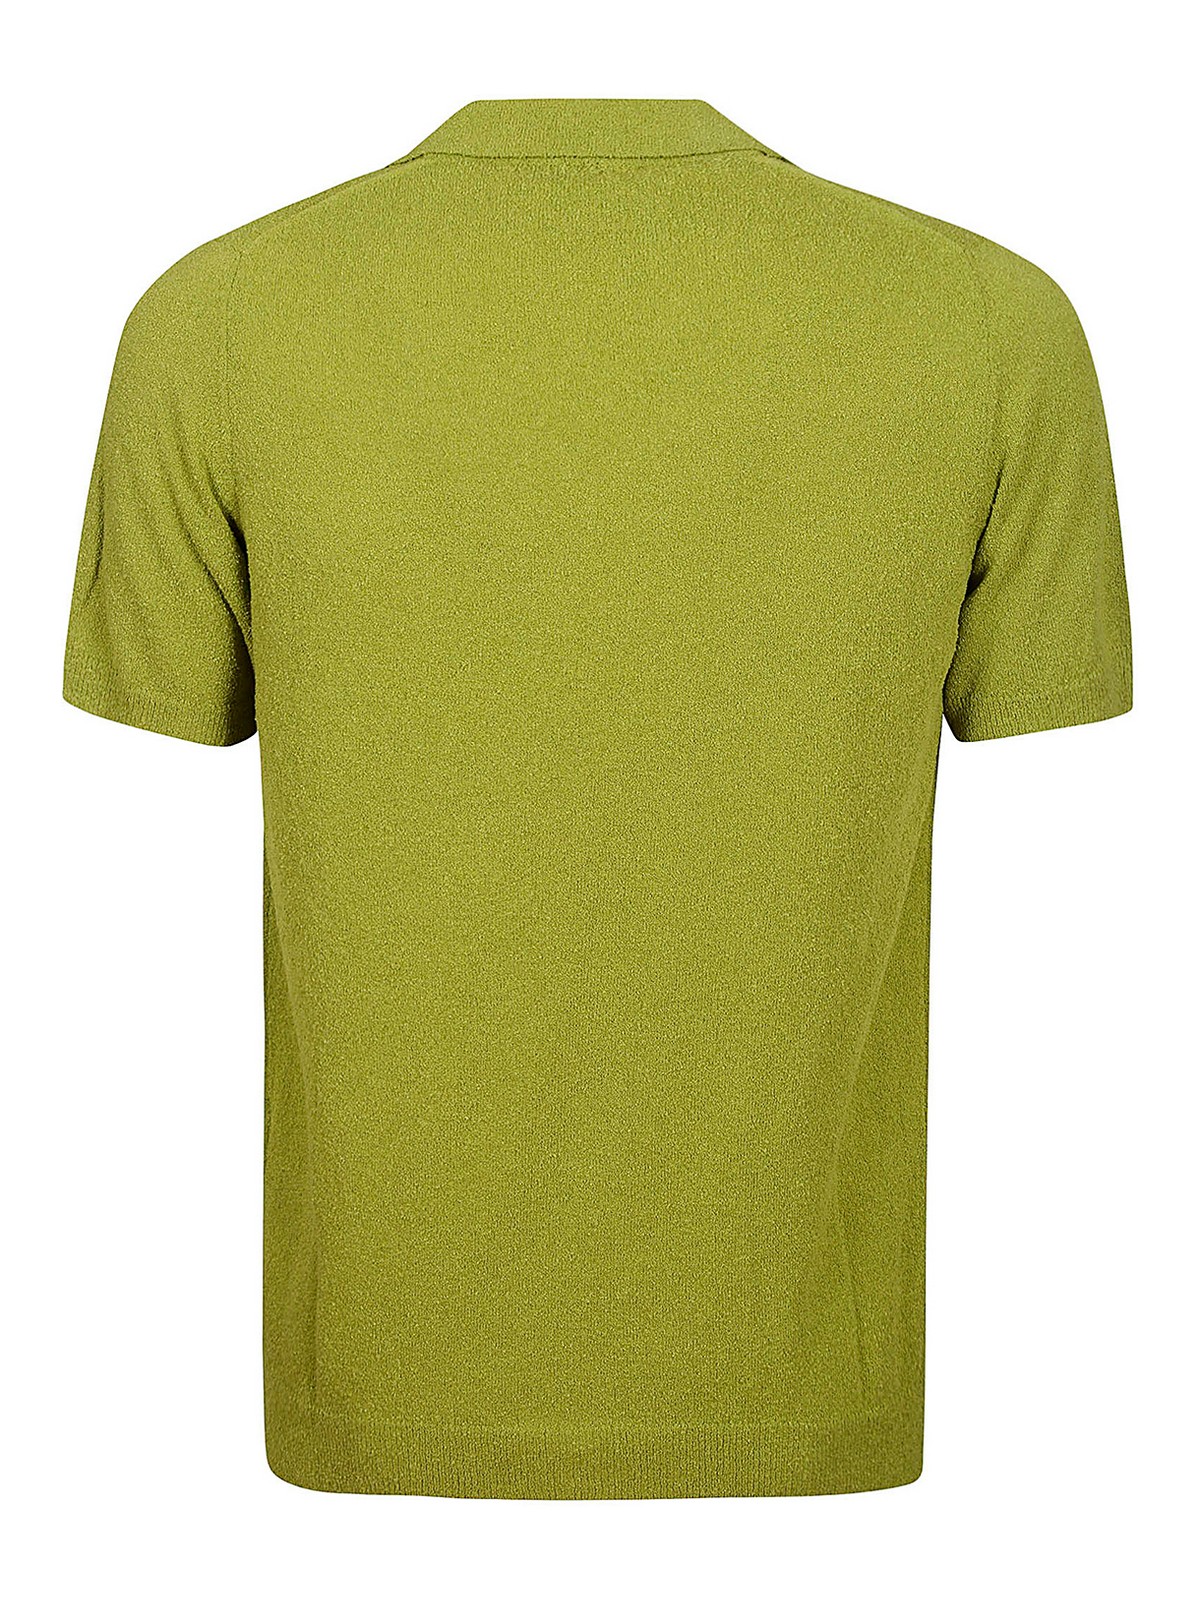 Polo shirts Roberto Collina - Polo shirt - RN44022RN4423 | iKRIX.com